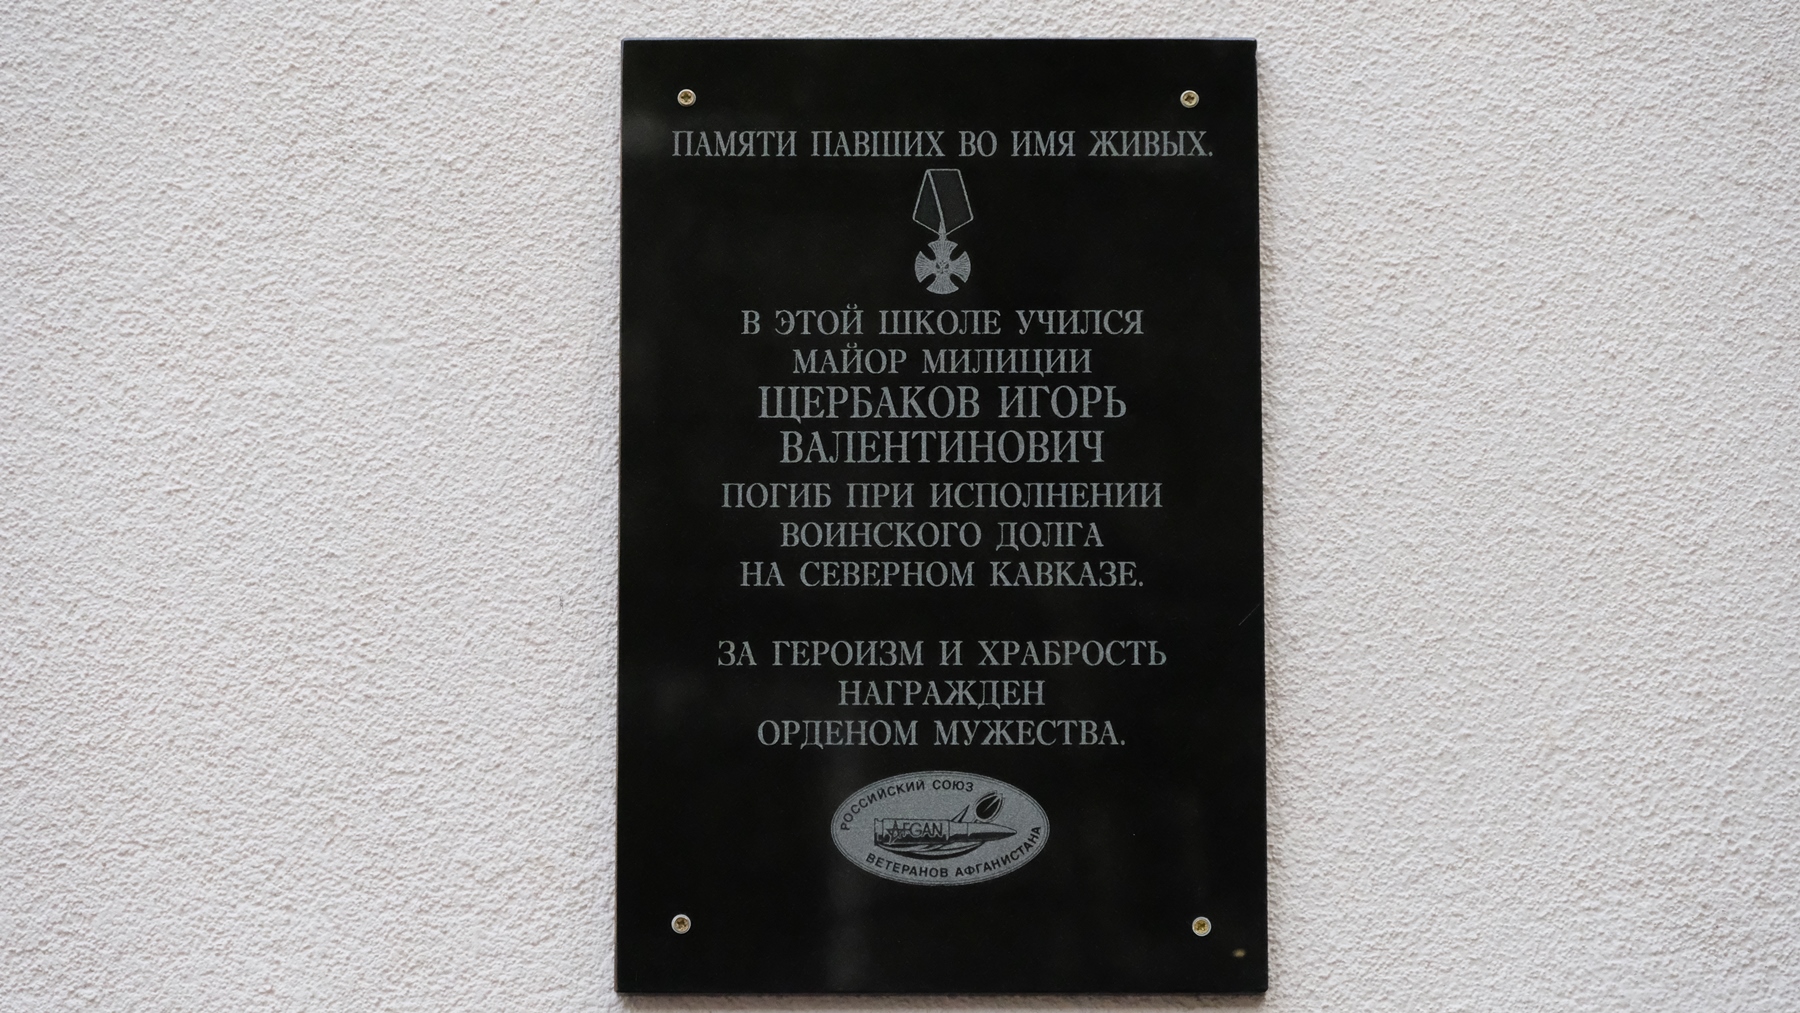 В Калининграде открыта мемориальная доска майору милиции Игорю Щербакову